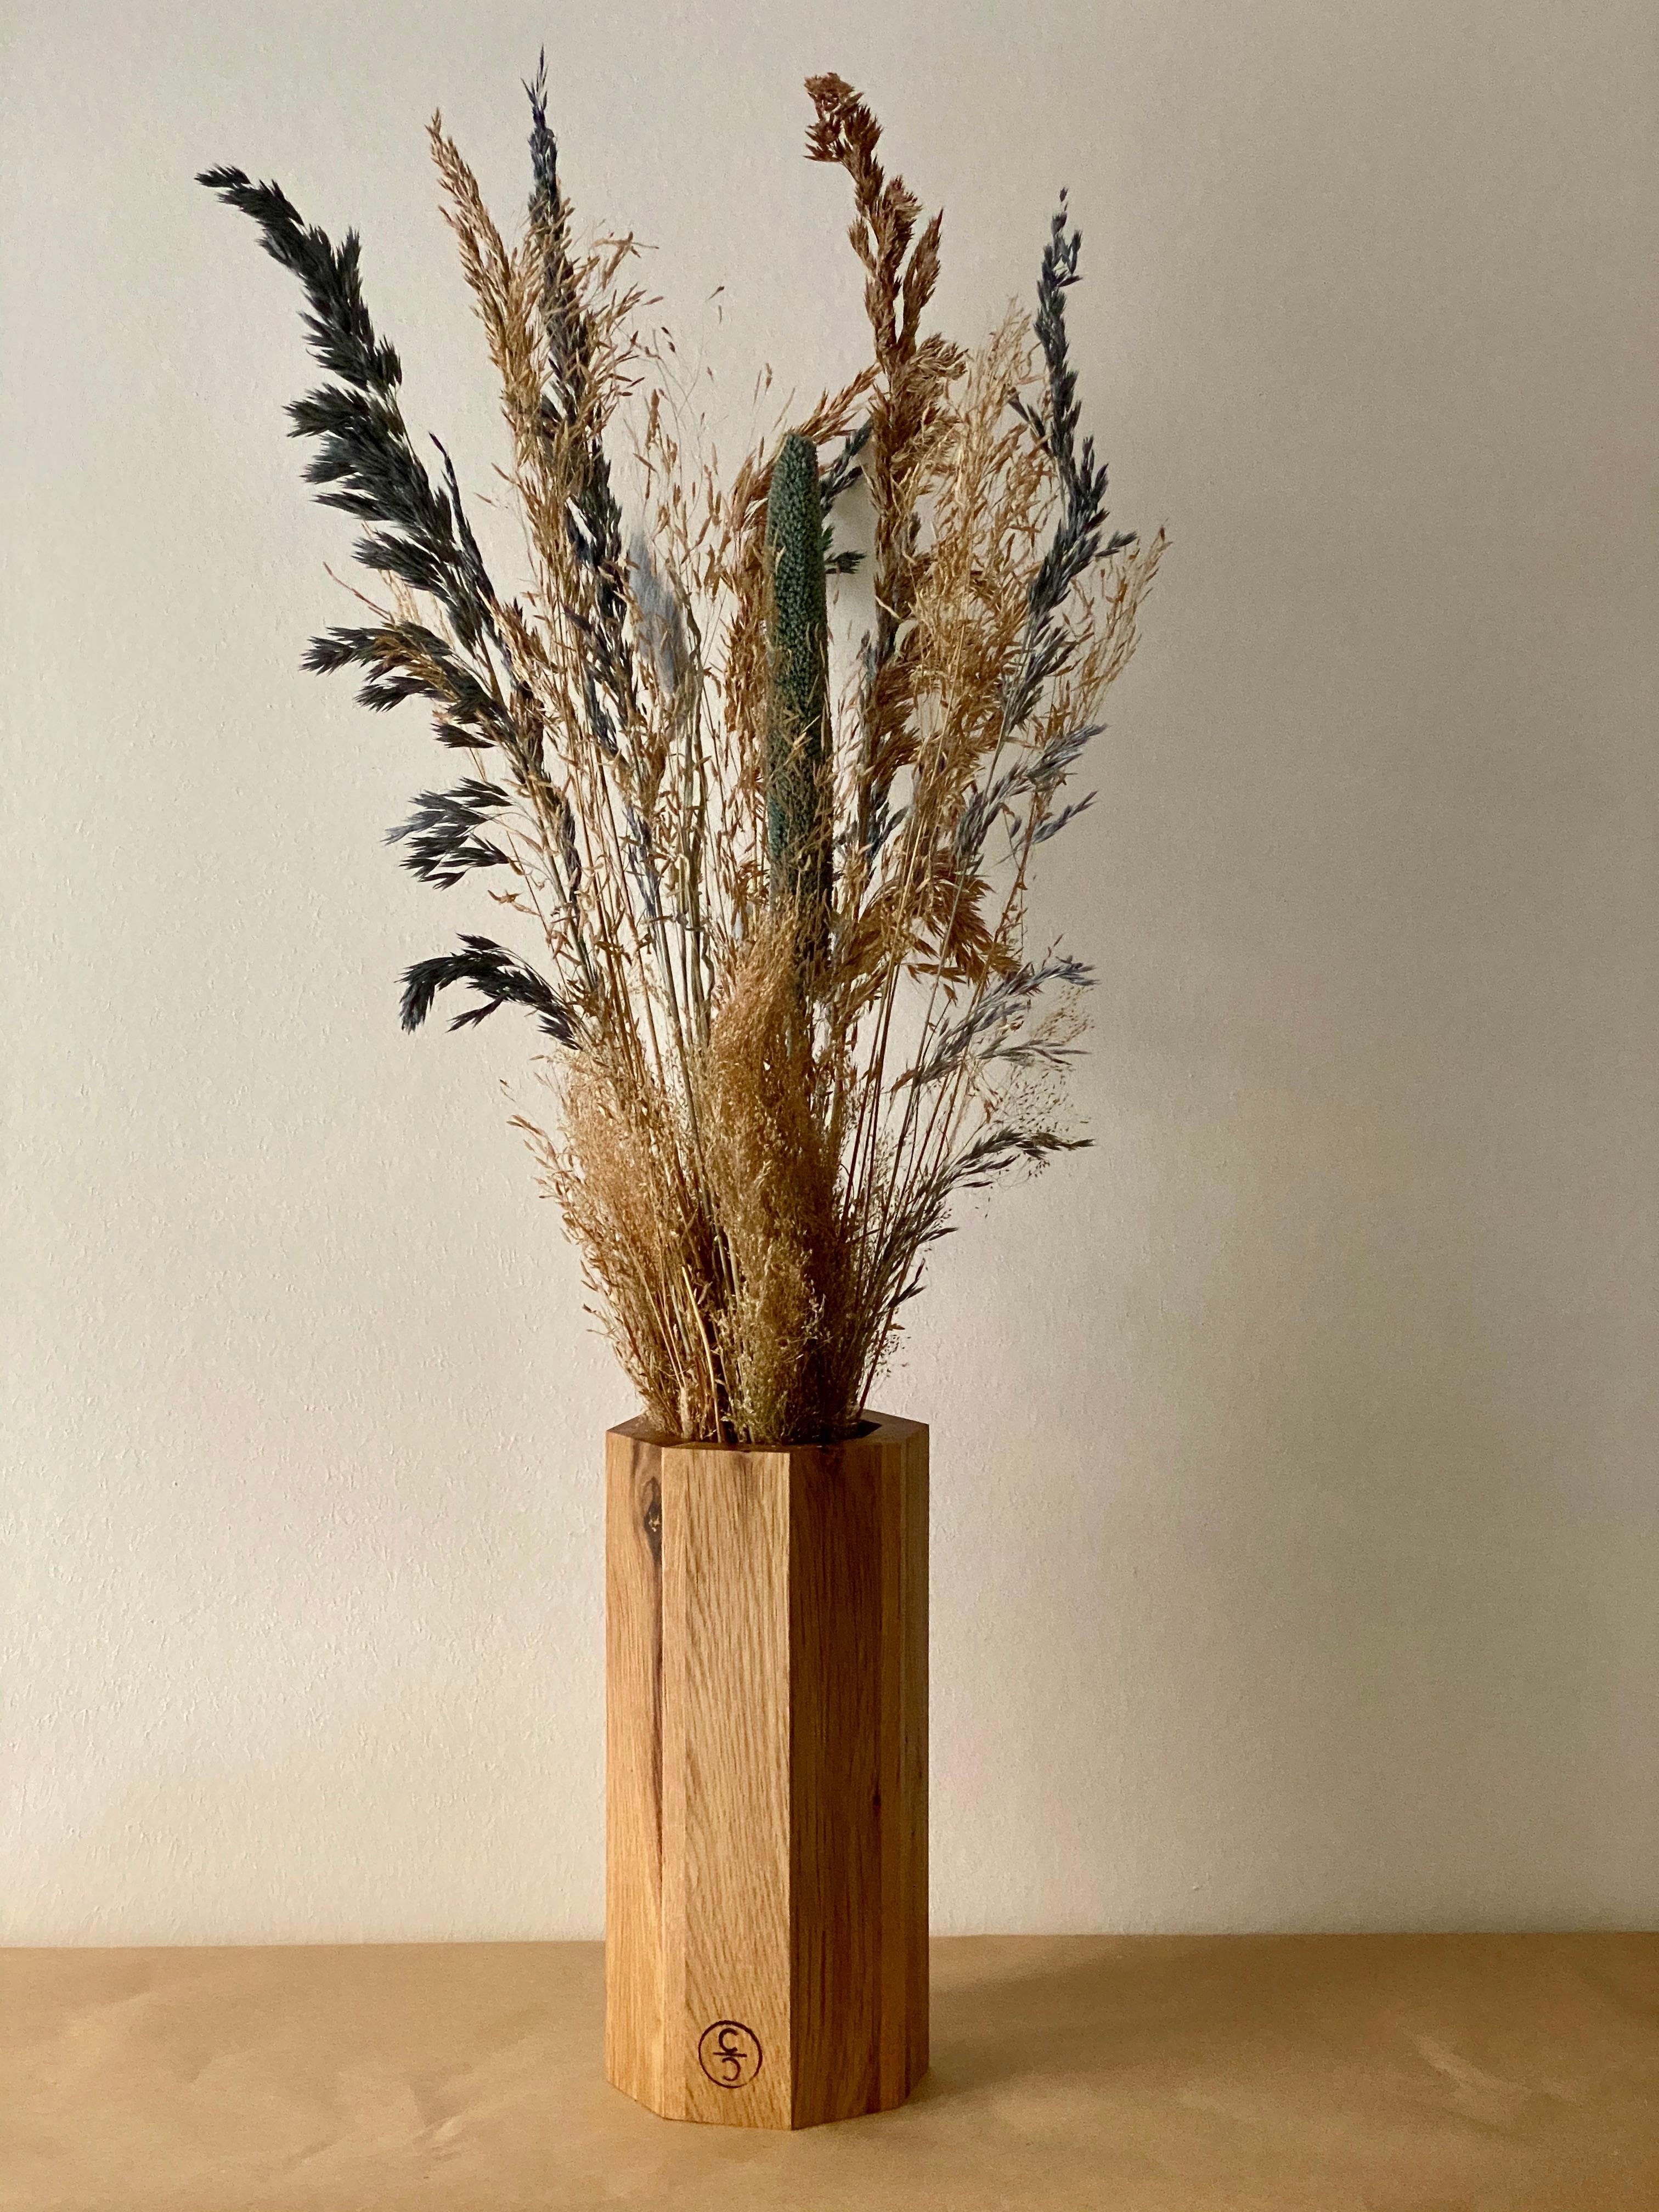 Unsere achteckige Holzvase "Ecki" in Kombination mit Trockenblumen ist ein echter Hingucker #vasenglueck #Vaseecki #vase